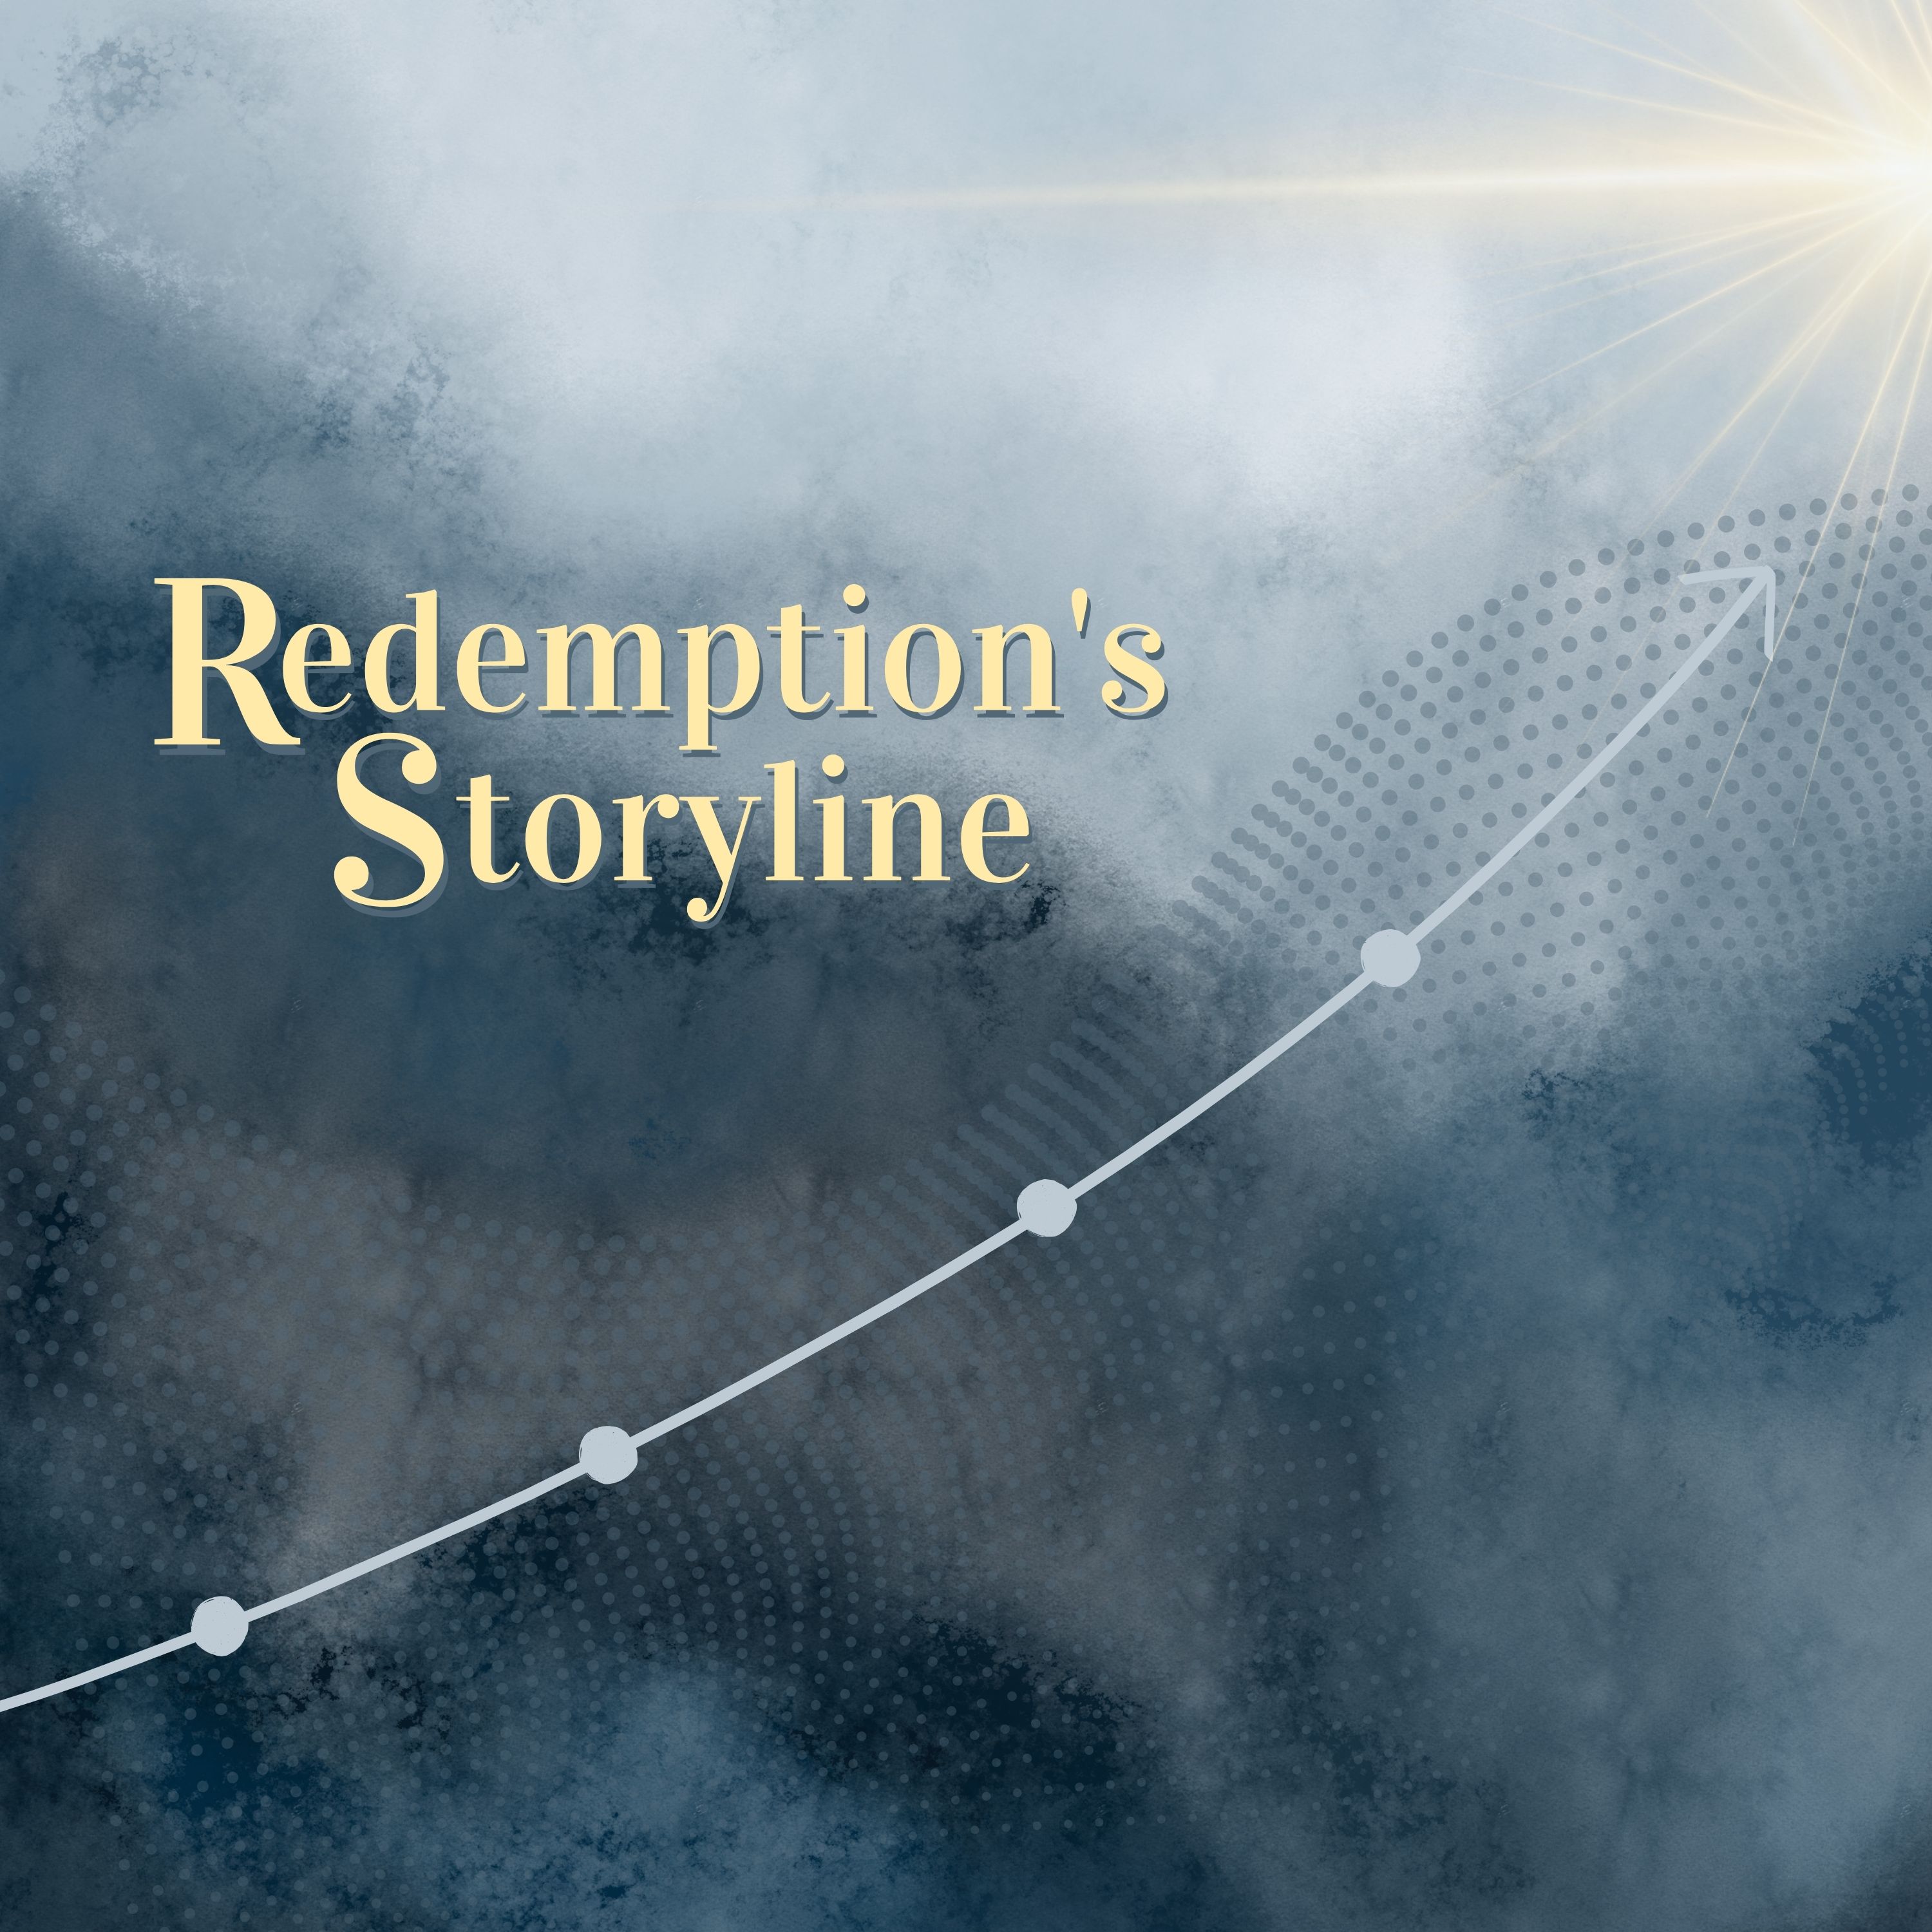 Redemption's Storyline: Creation